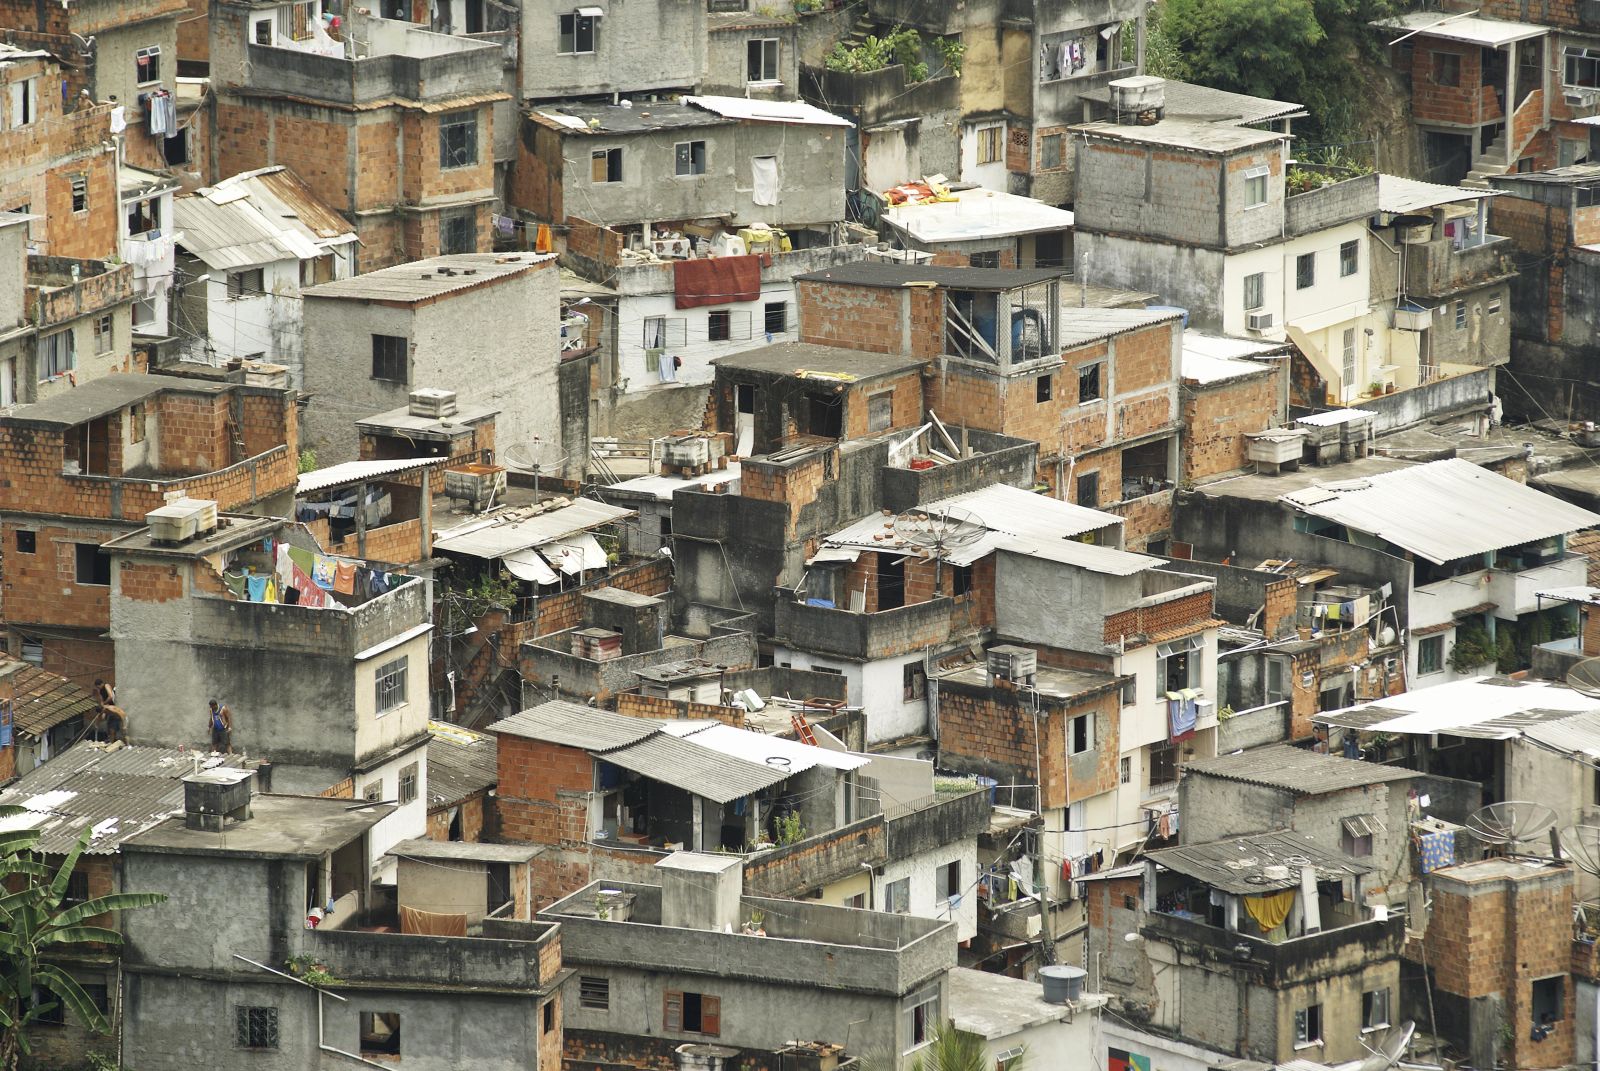 Slumbewohner sind eher von psychischen Störungen betroffen als andere Menschen. Favela in Rio de Janeiro.